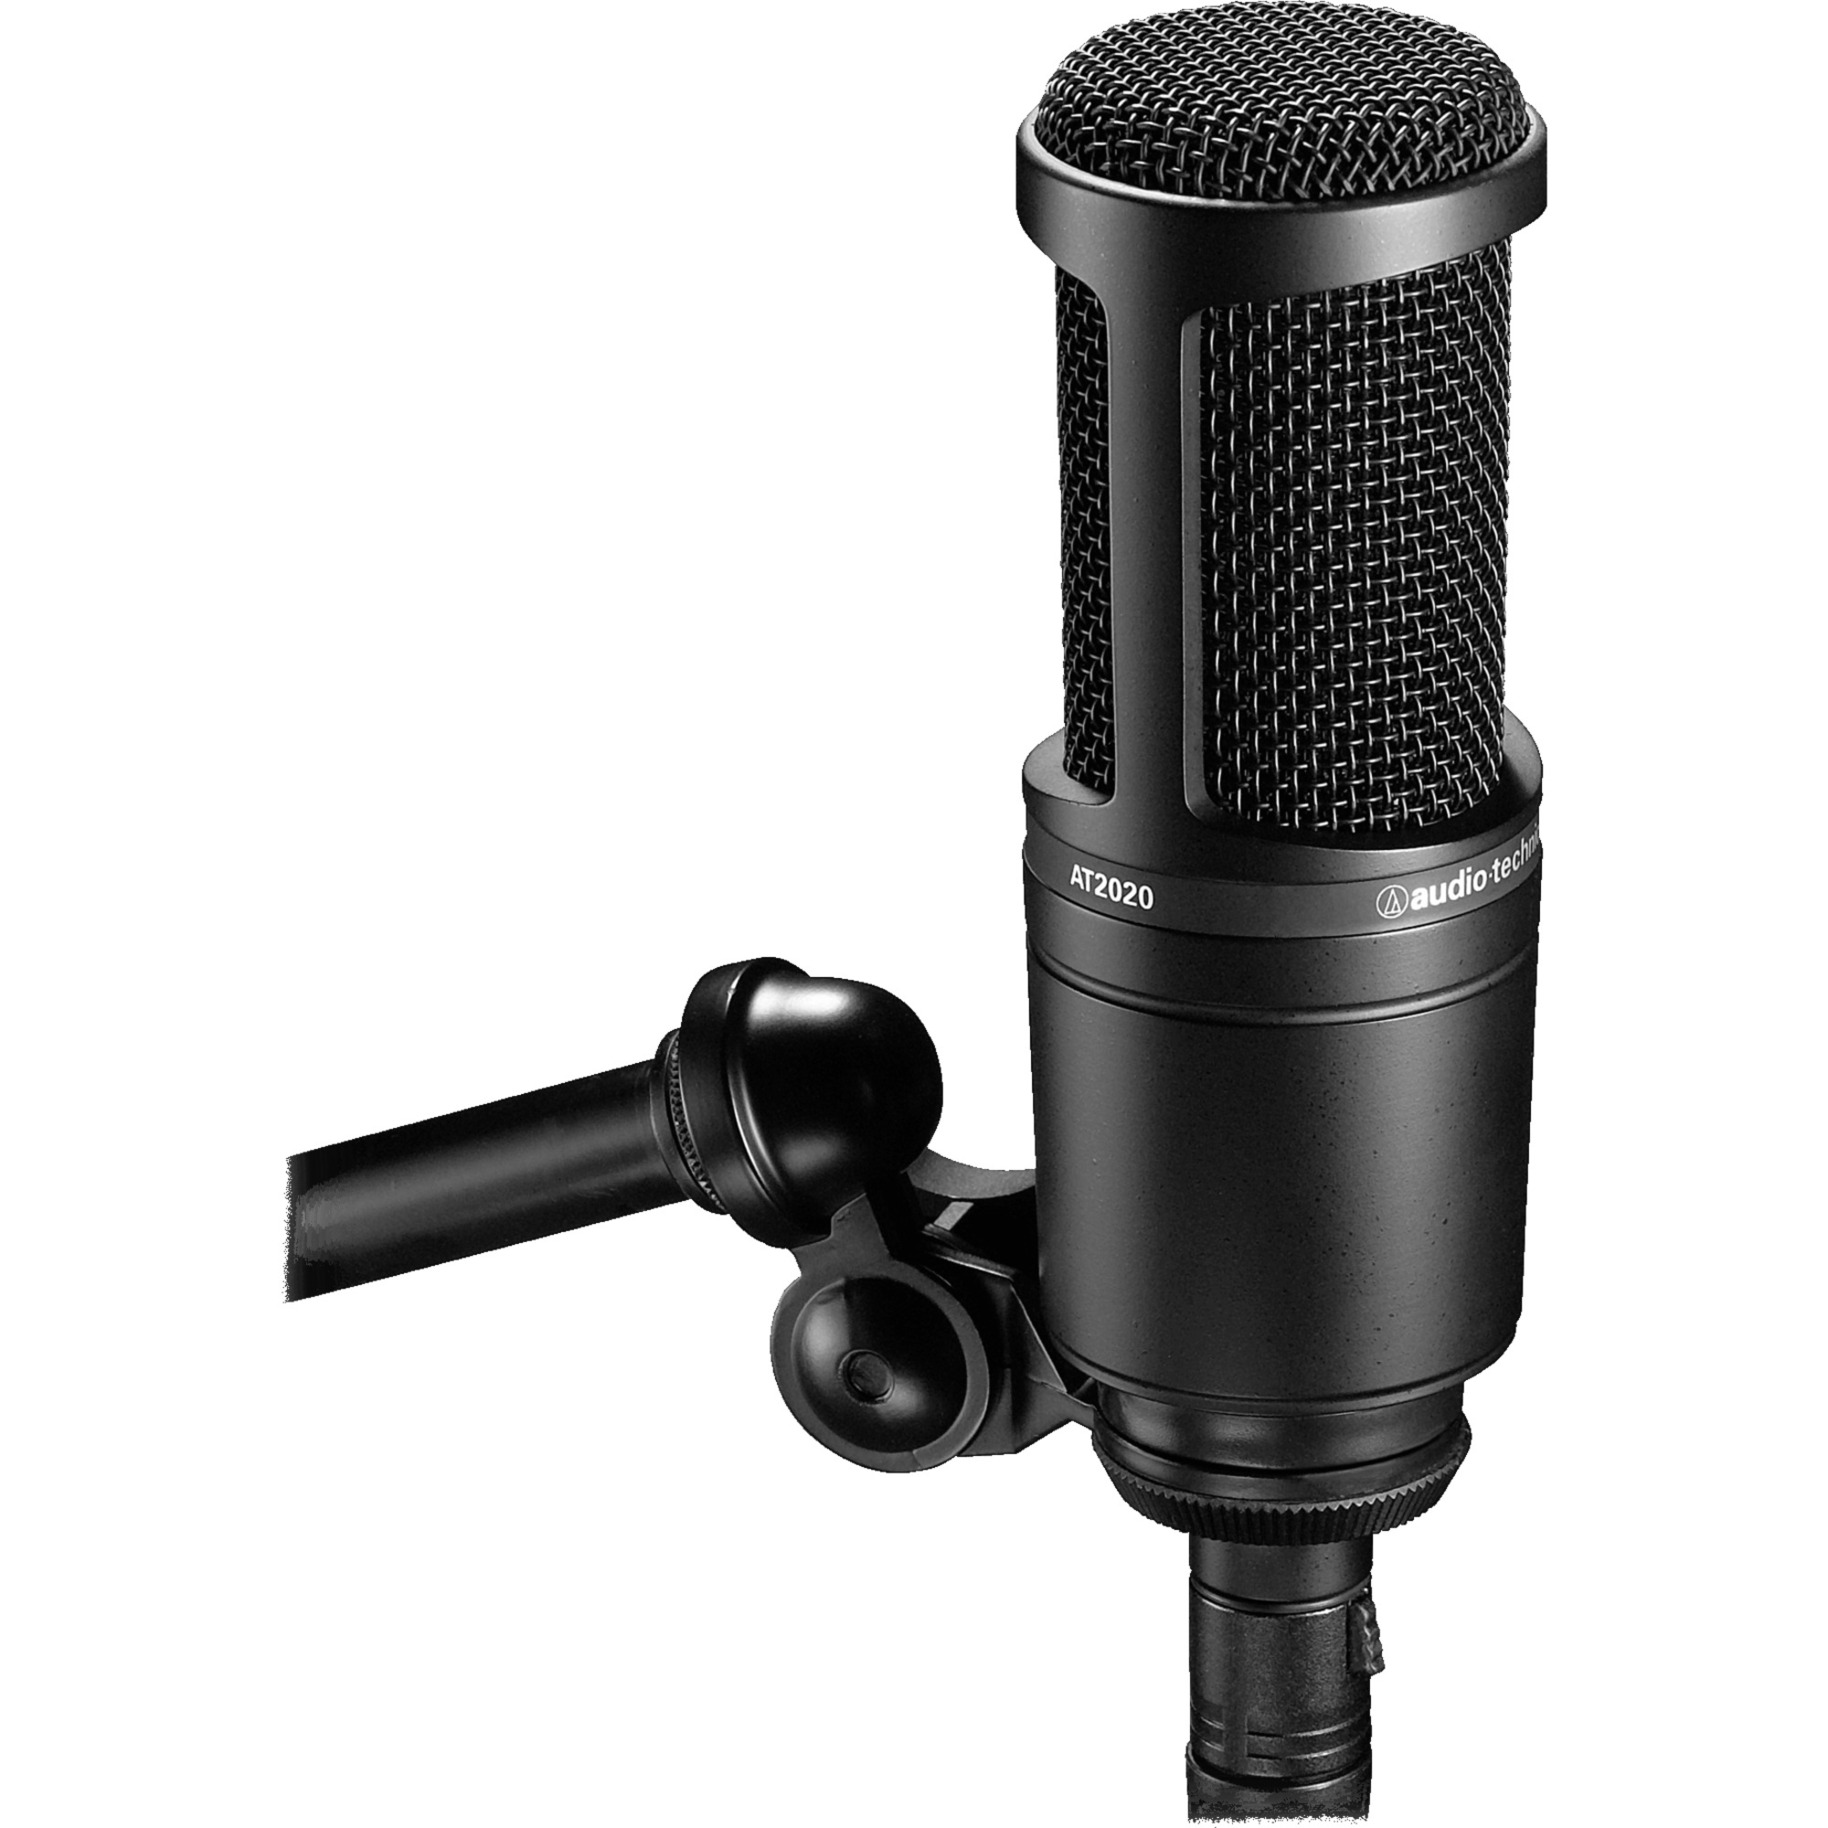 Image of Alternate - AT2020, Mikrofon online einkaufen bei Alternate